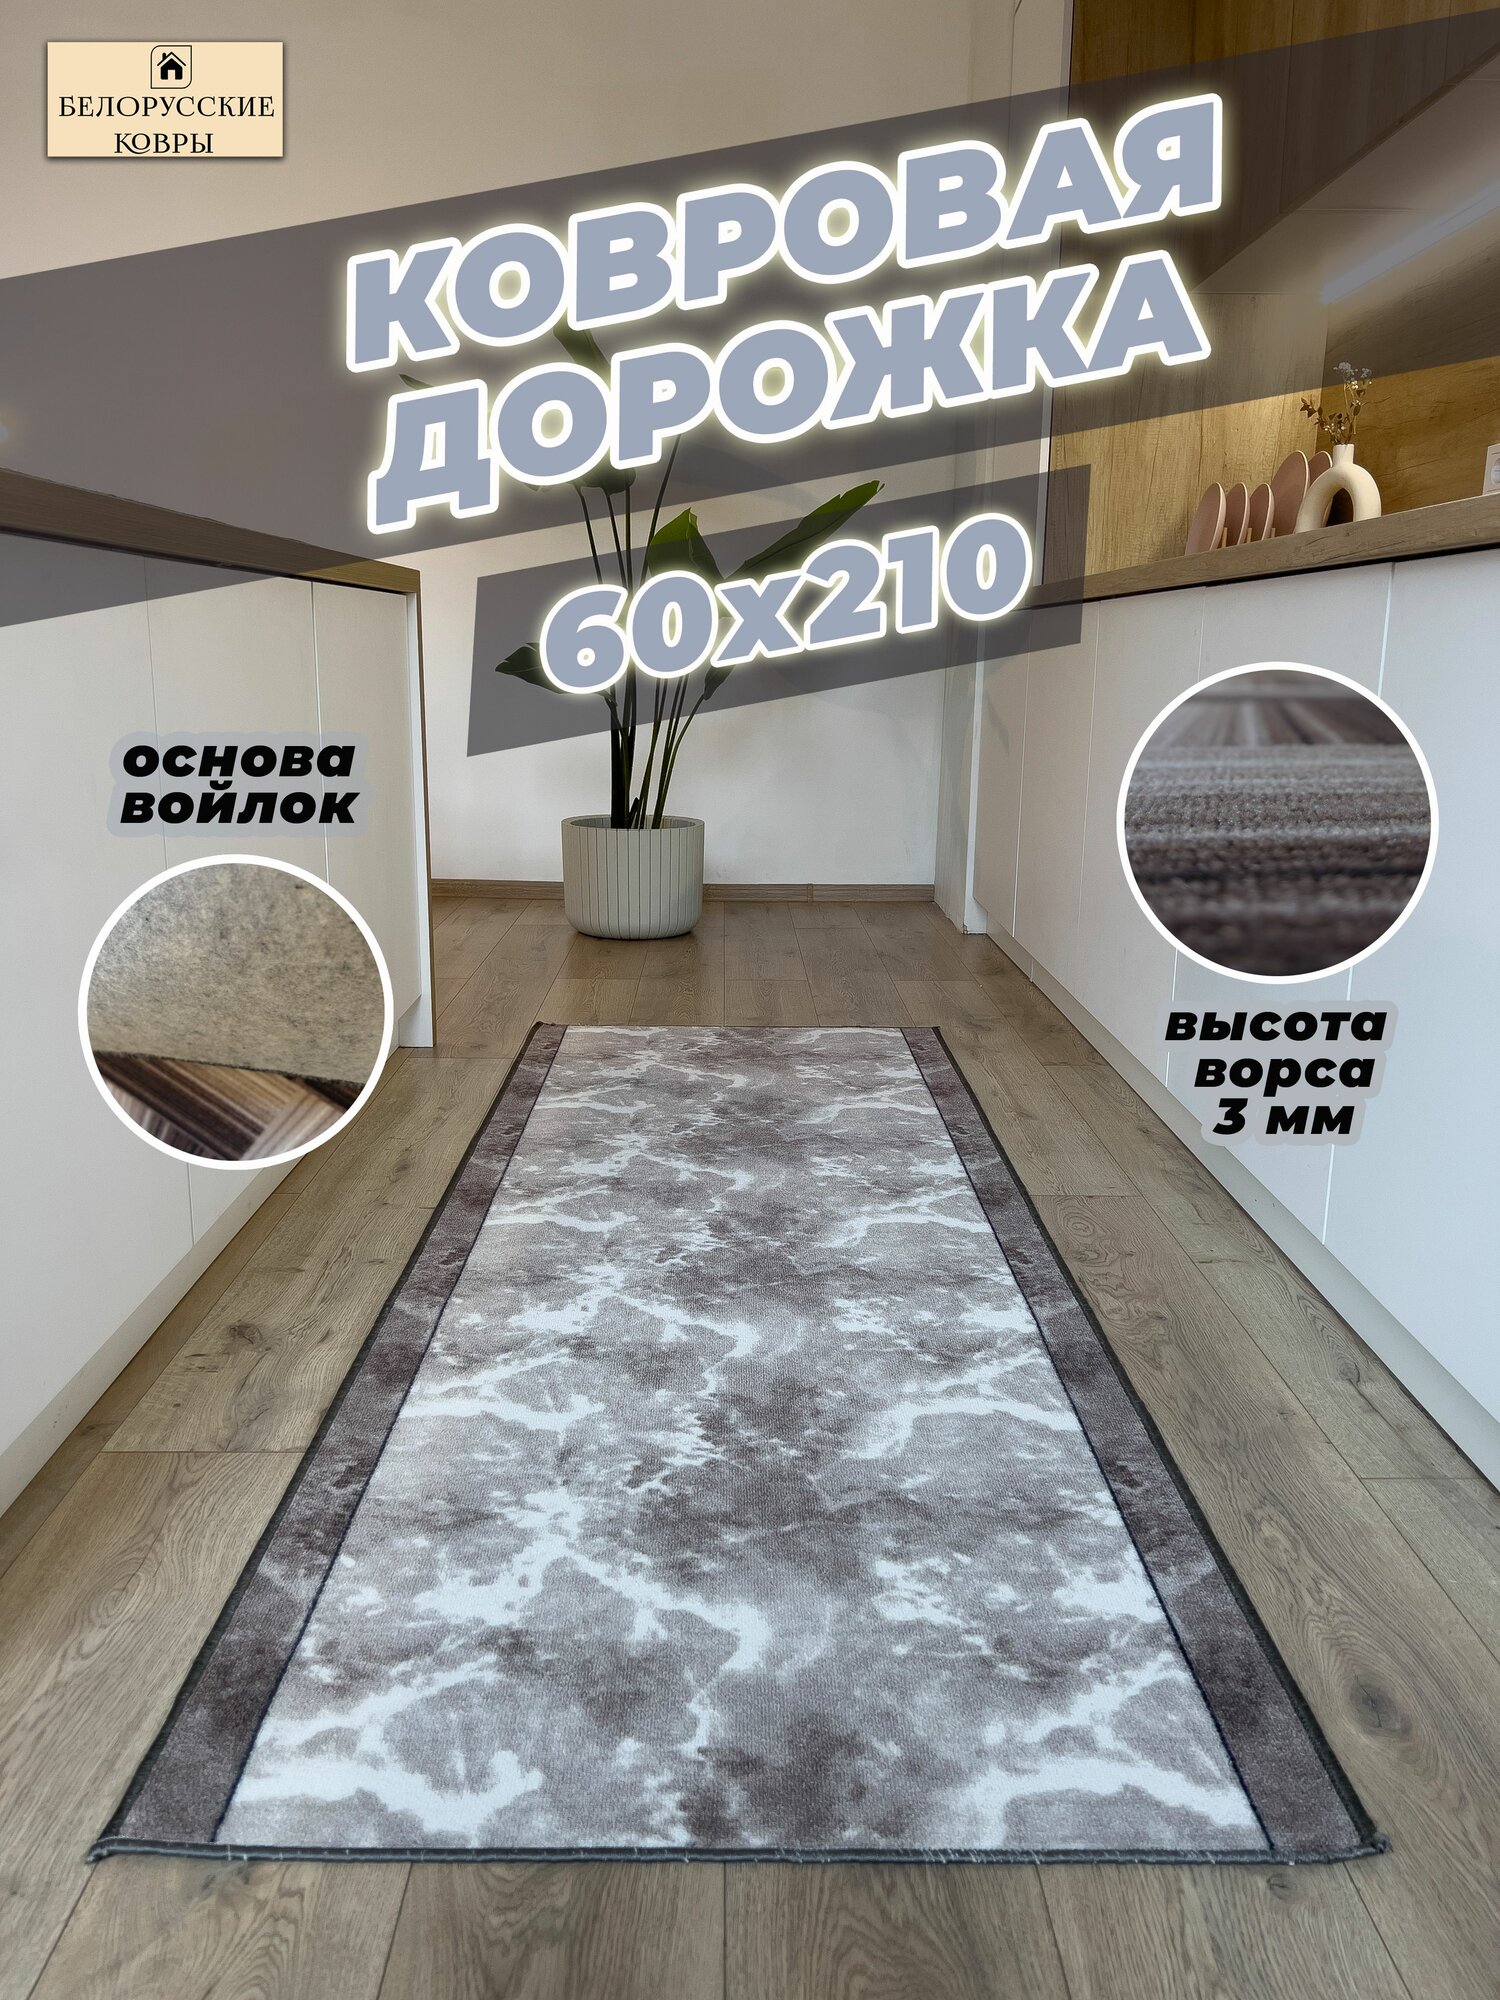 Белорусские ковры, ковровая дорожка 60х210 см./0,6х2,1 м.